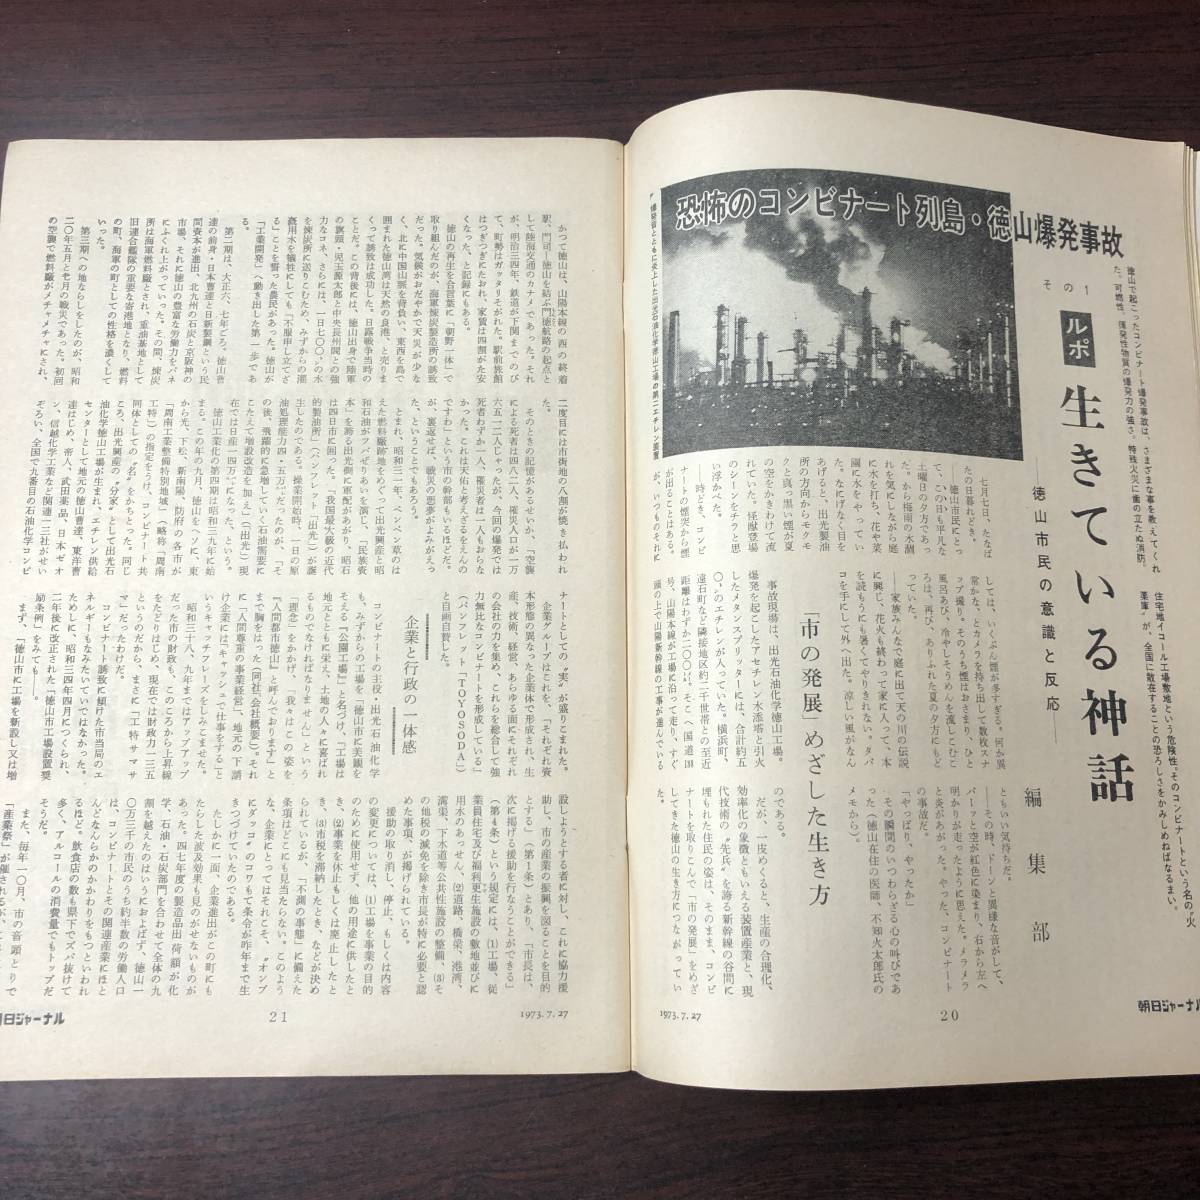 A01【ゆうメール送料無料】朝日ジャーナル 1973年7月27日号 VOL.15 NO.29の画像5